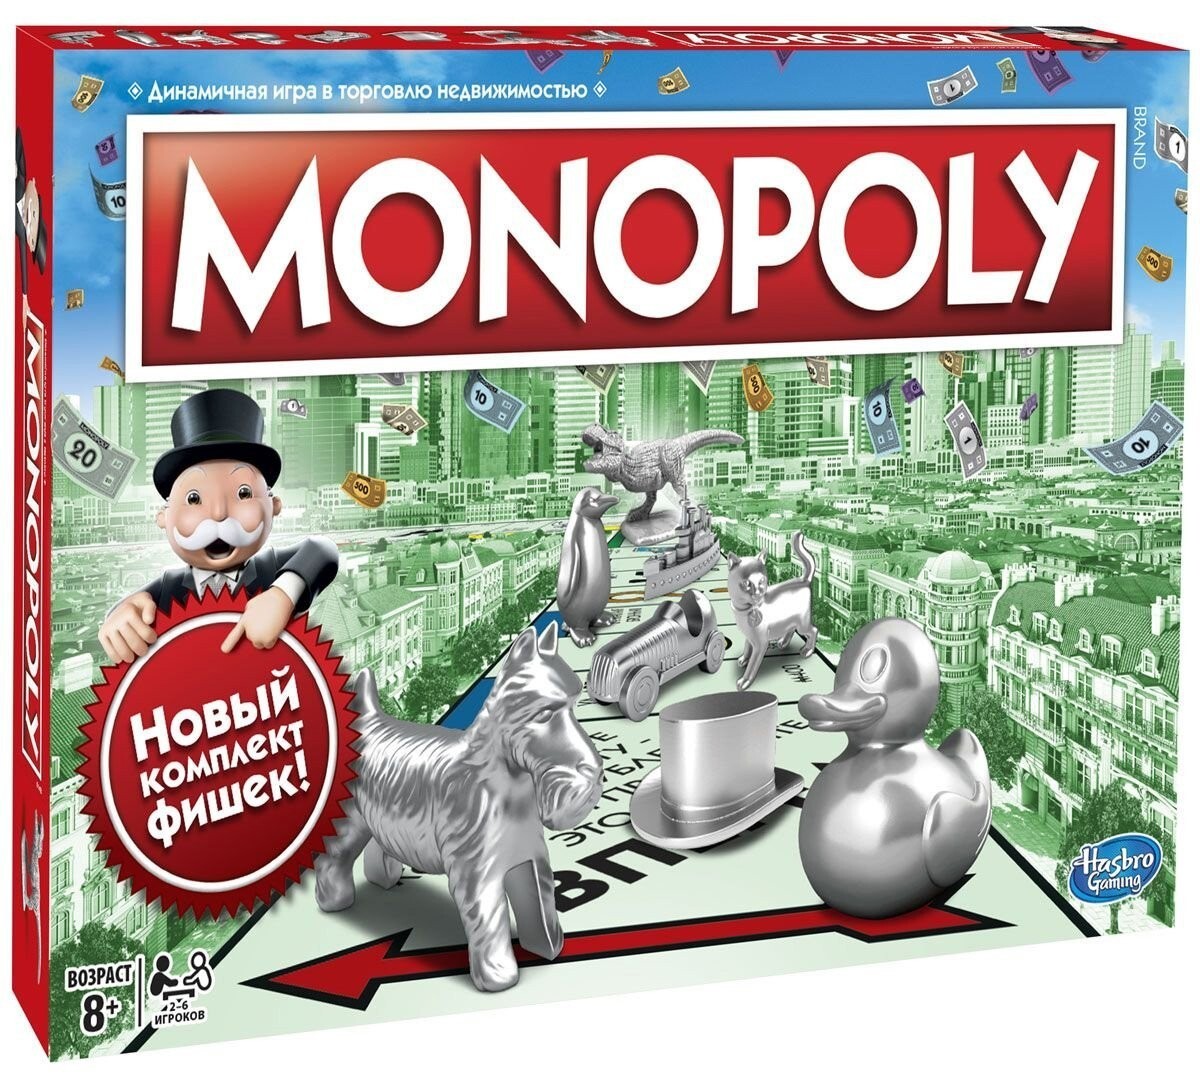 Монополия стратегия. Настольная игра Monopoly классическая обновленная c1009. Игры Хасбро Монополия. Монополия классическая Hasbro. Монополия настольная игра Hasbro.